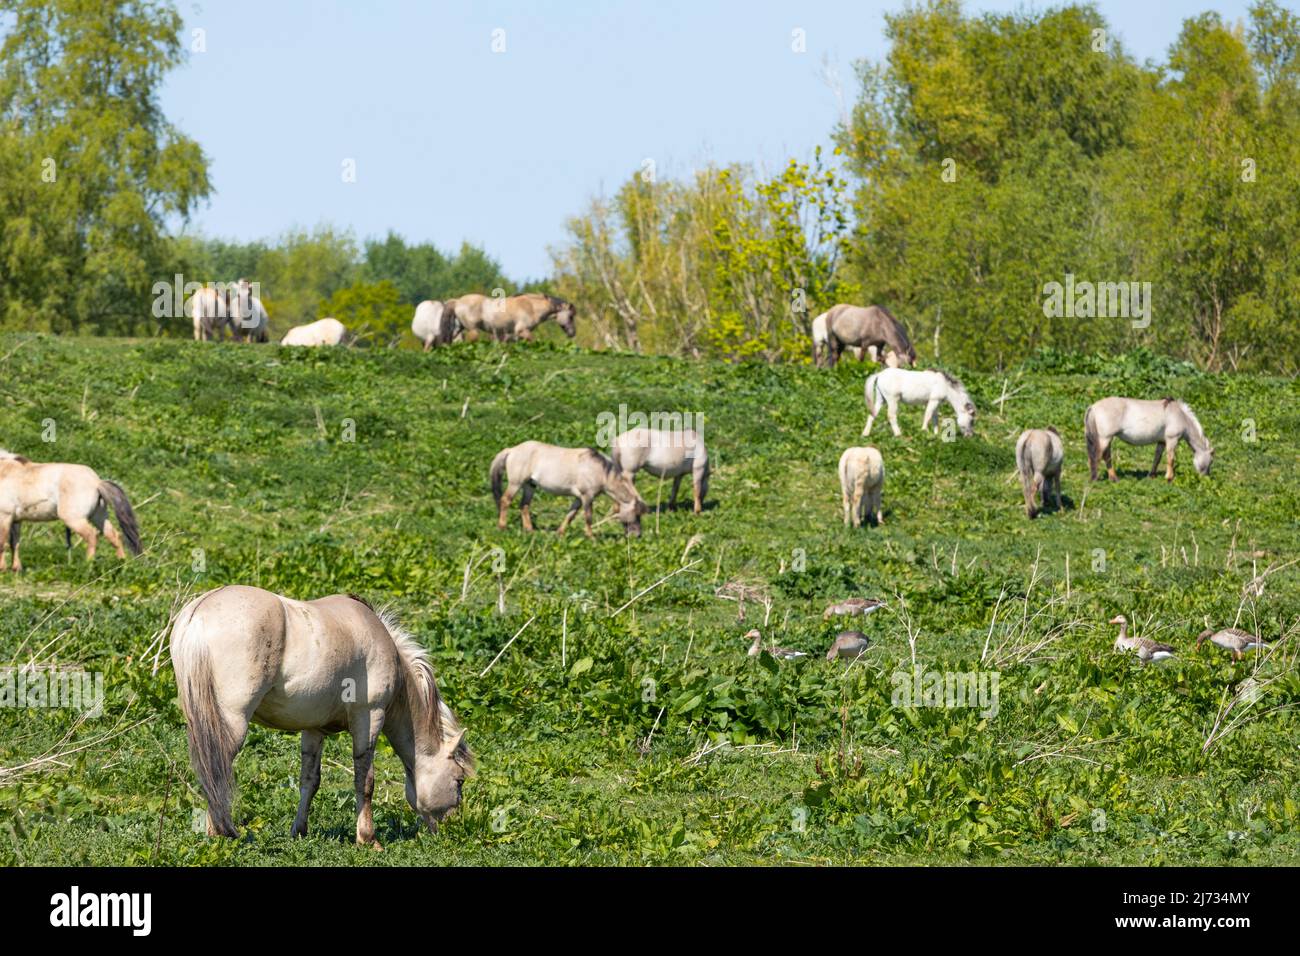 Konik horses grazing in nature park Oostvaardersplassen in the Netherlands Stock Photo